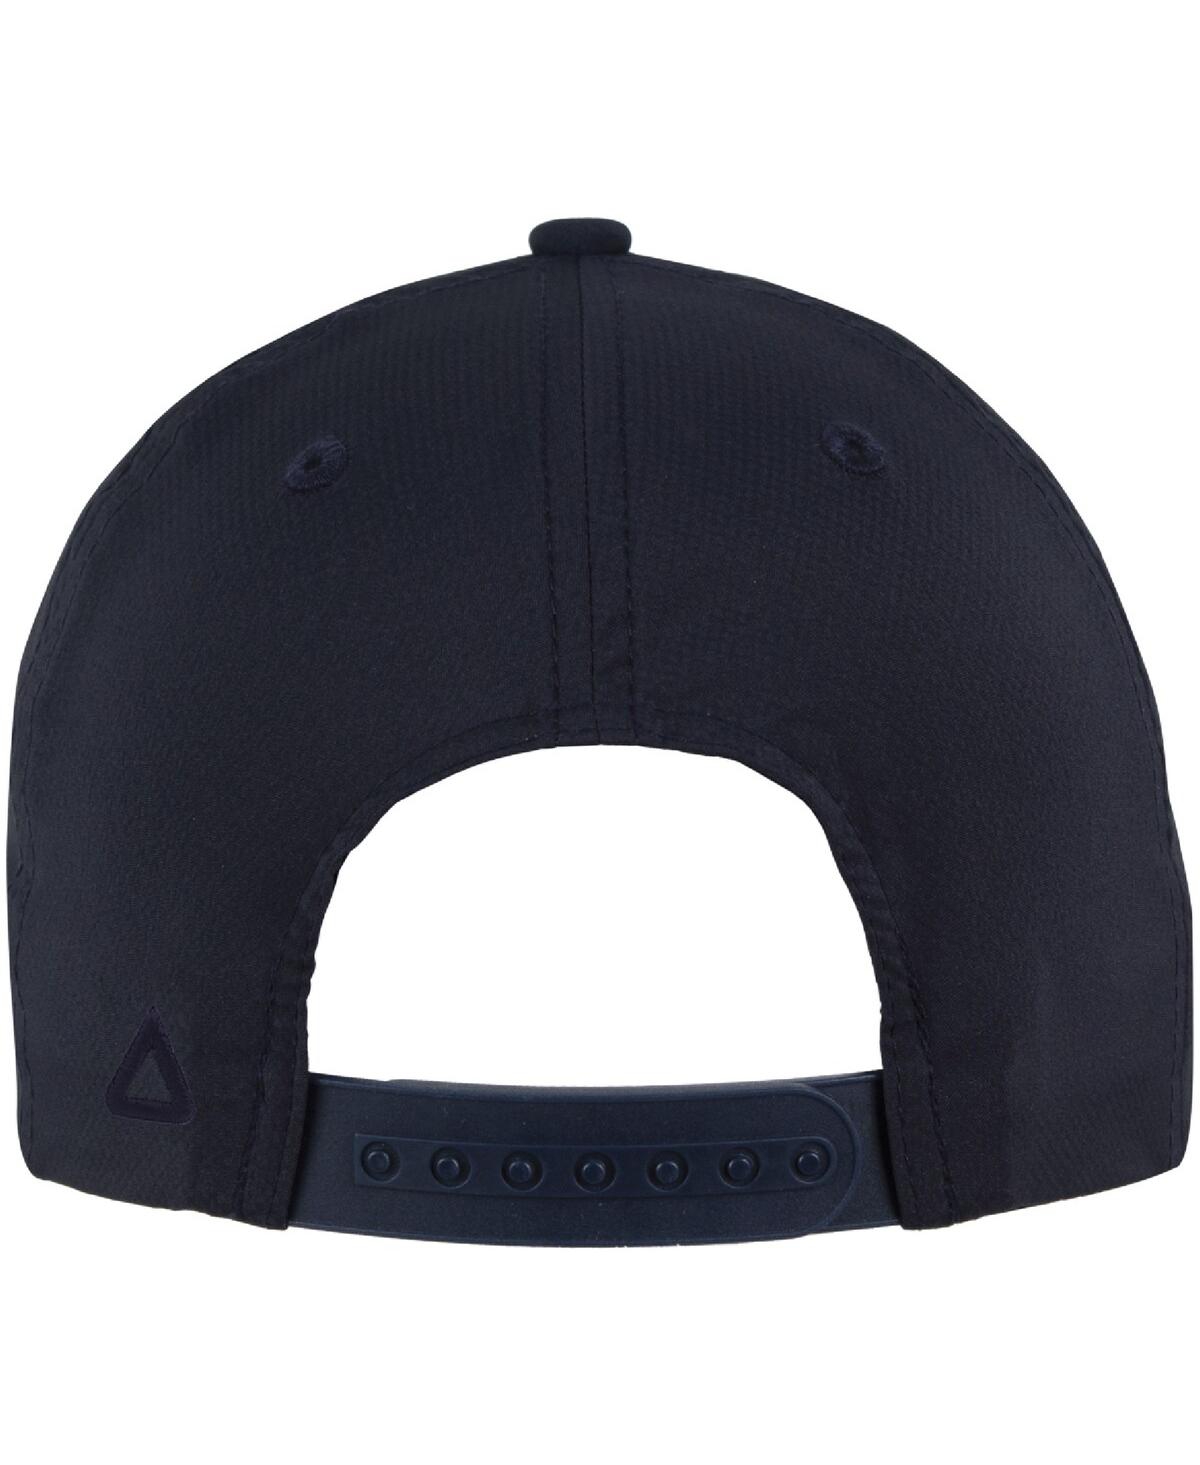 Shop Ahead Men's And Women's  Navy Wm Phoenix Open Alto Rope Aerosphere Tech Adjustable Hat